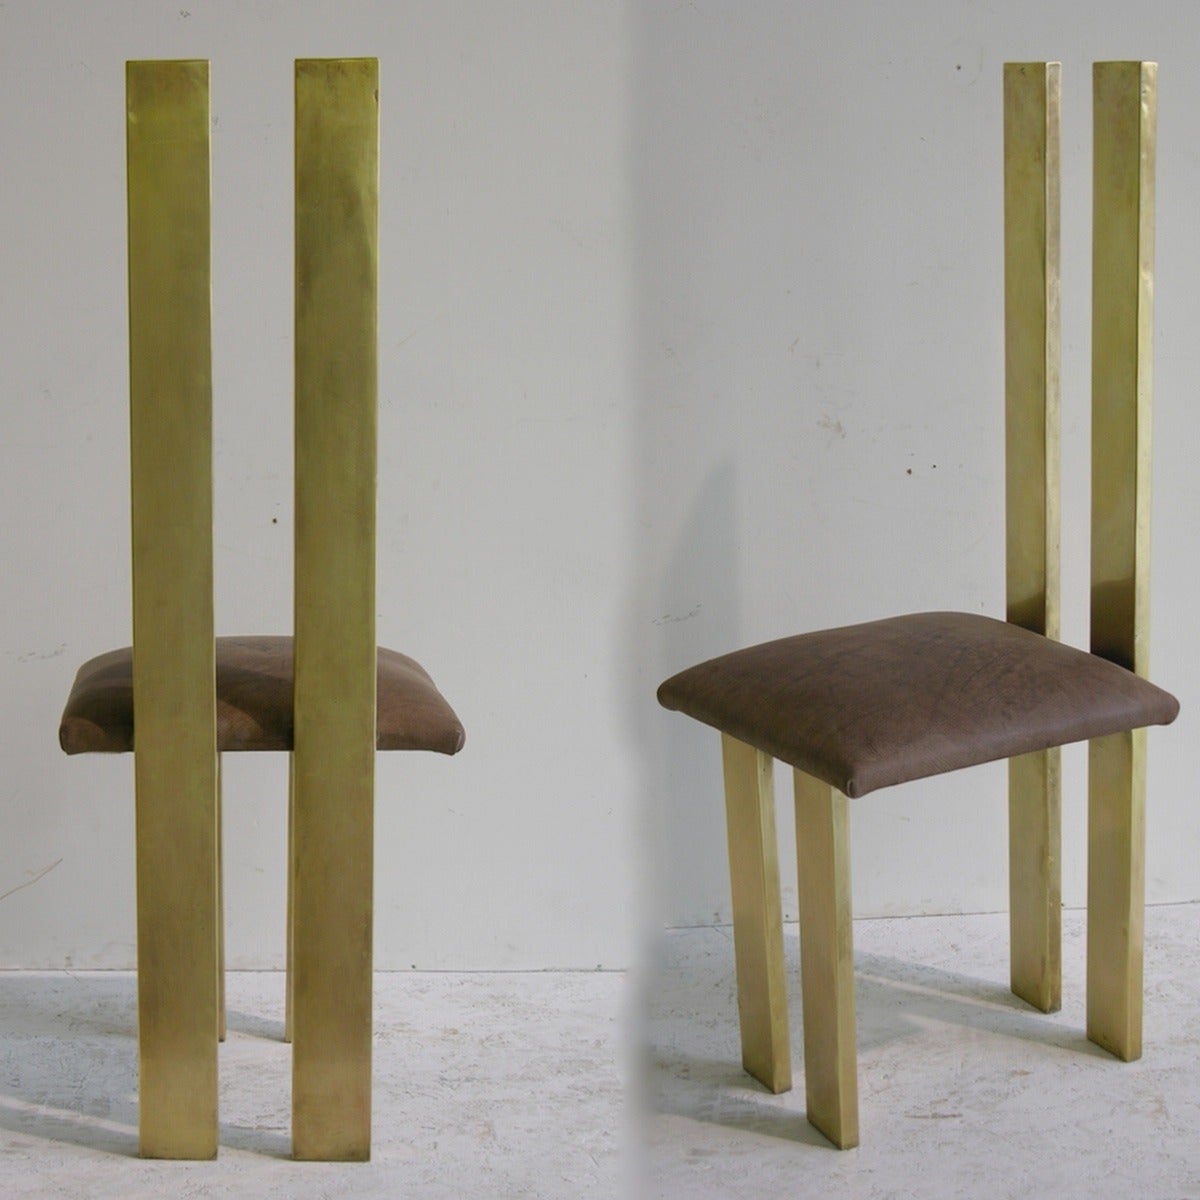 Sandro Petti 1970s Remarkable Italian Minimalist Pair of Sculptural Chairs 1